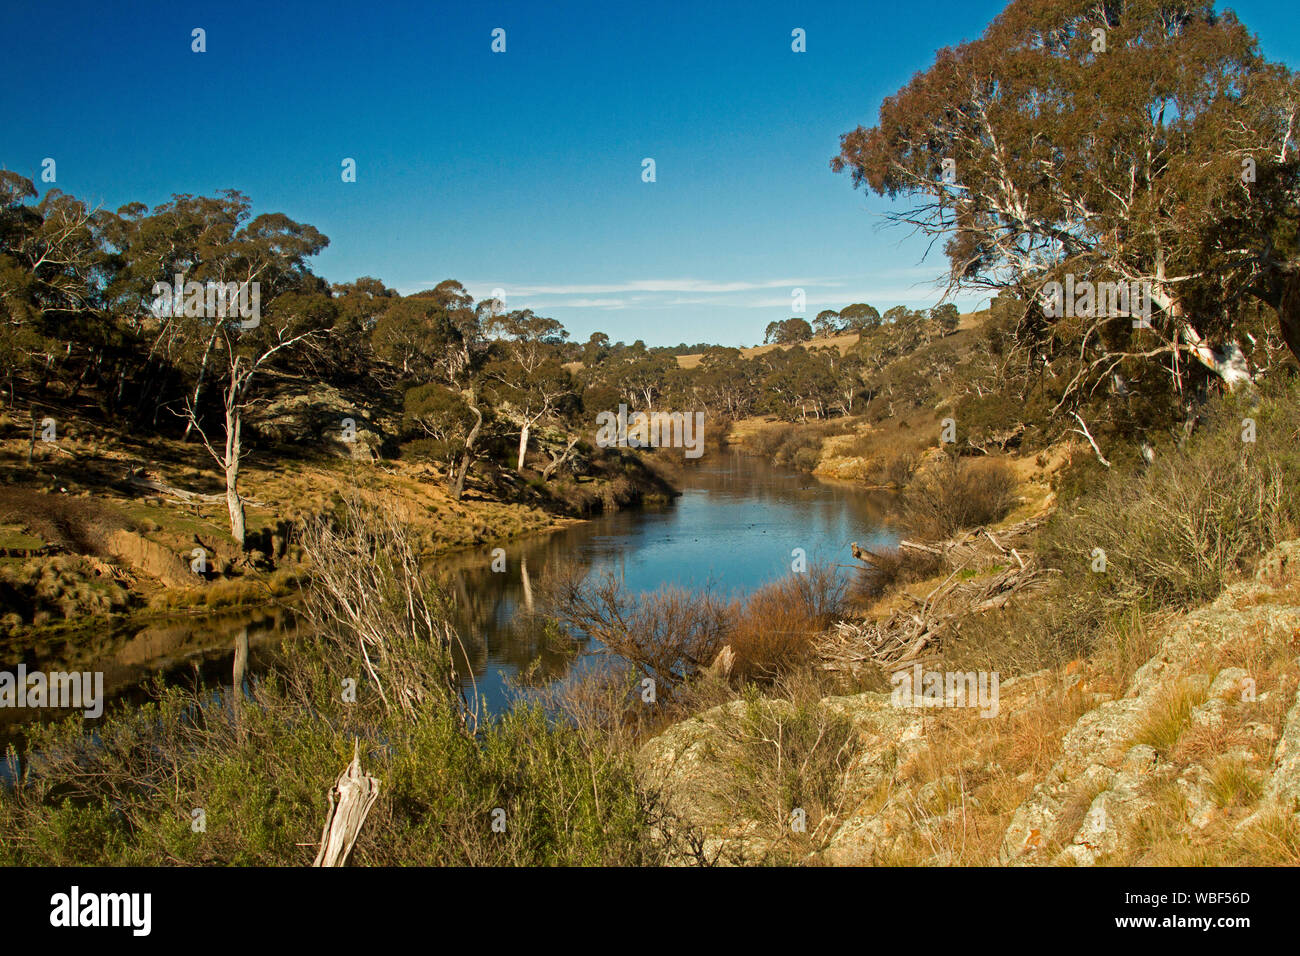 Australische Landschaft mit ruhigen blauen Wasser des Flusses Bombala von Hügeln mit Gummi Bäume und goldene Gräser unter blauen Himmel in NSW getarnte gesäumt Stockfoto